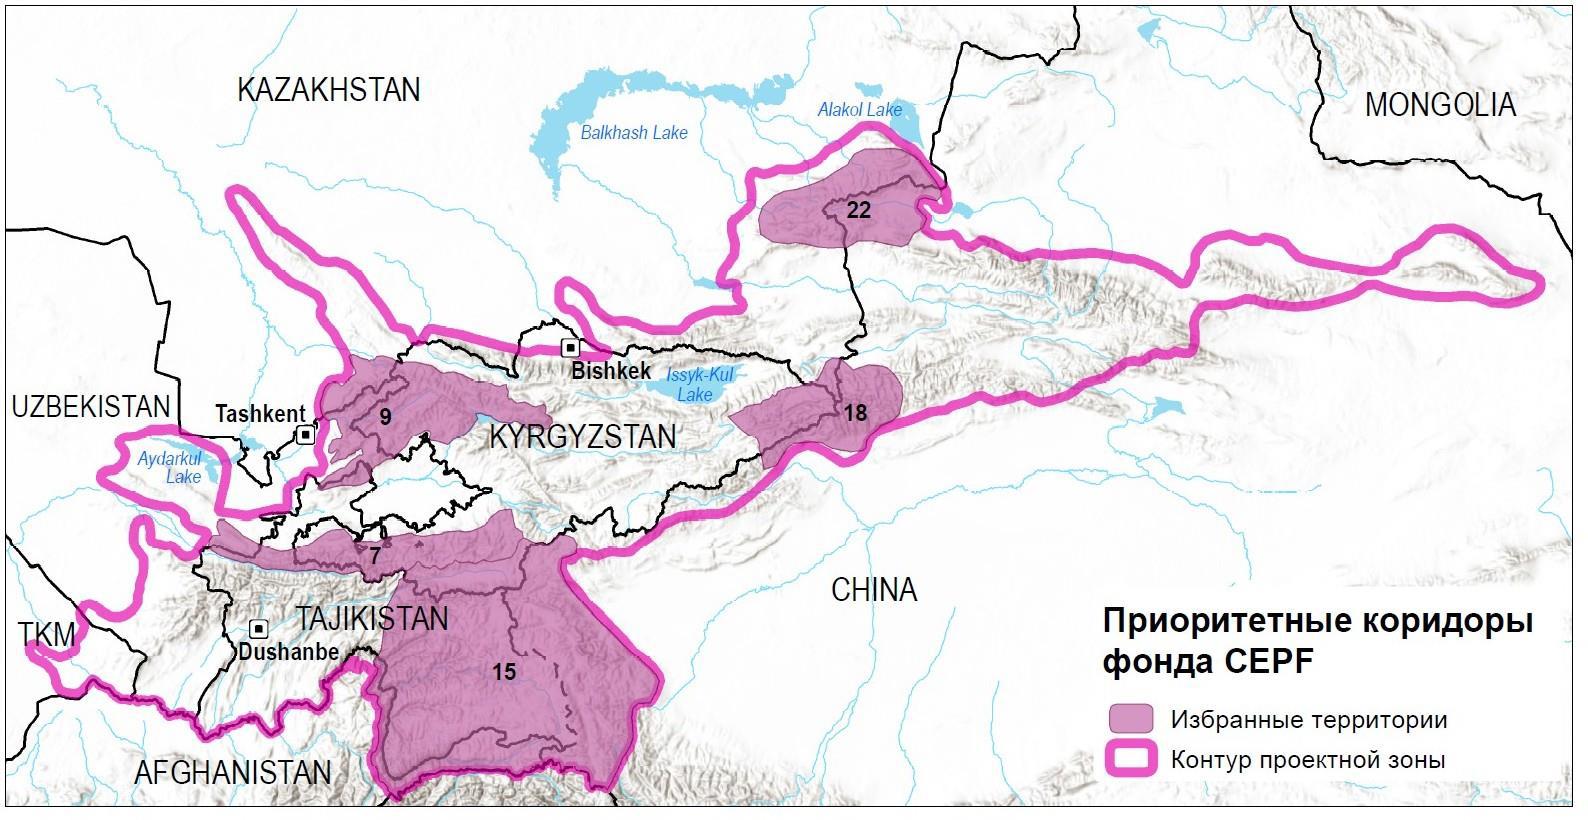 Конкурс заявок на получение малого гранта Очаг биоразнообразия в горах Центральной Азии